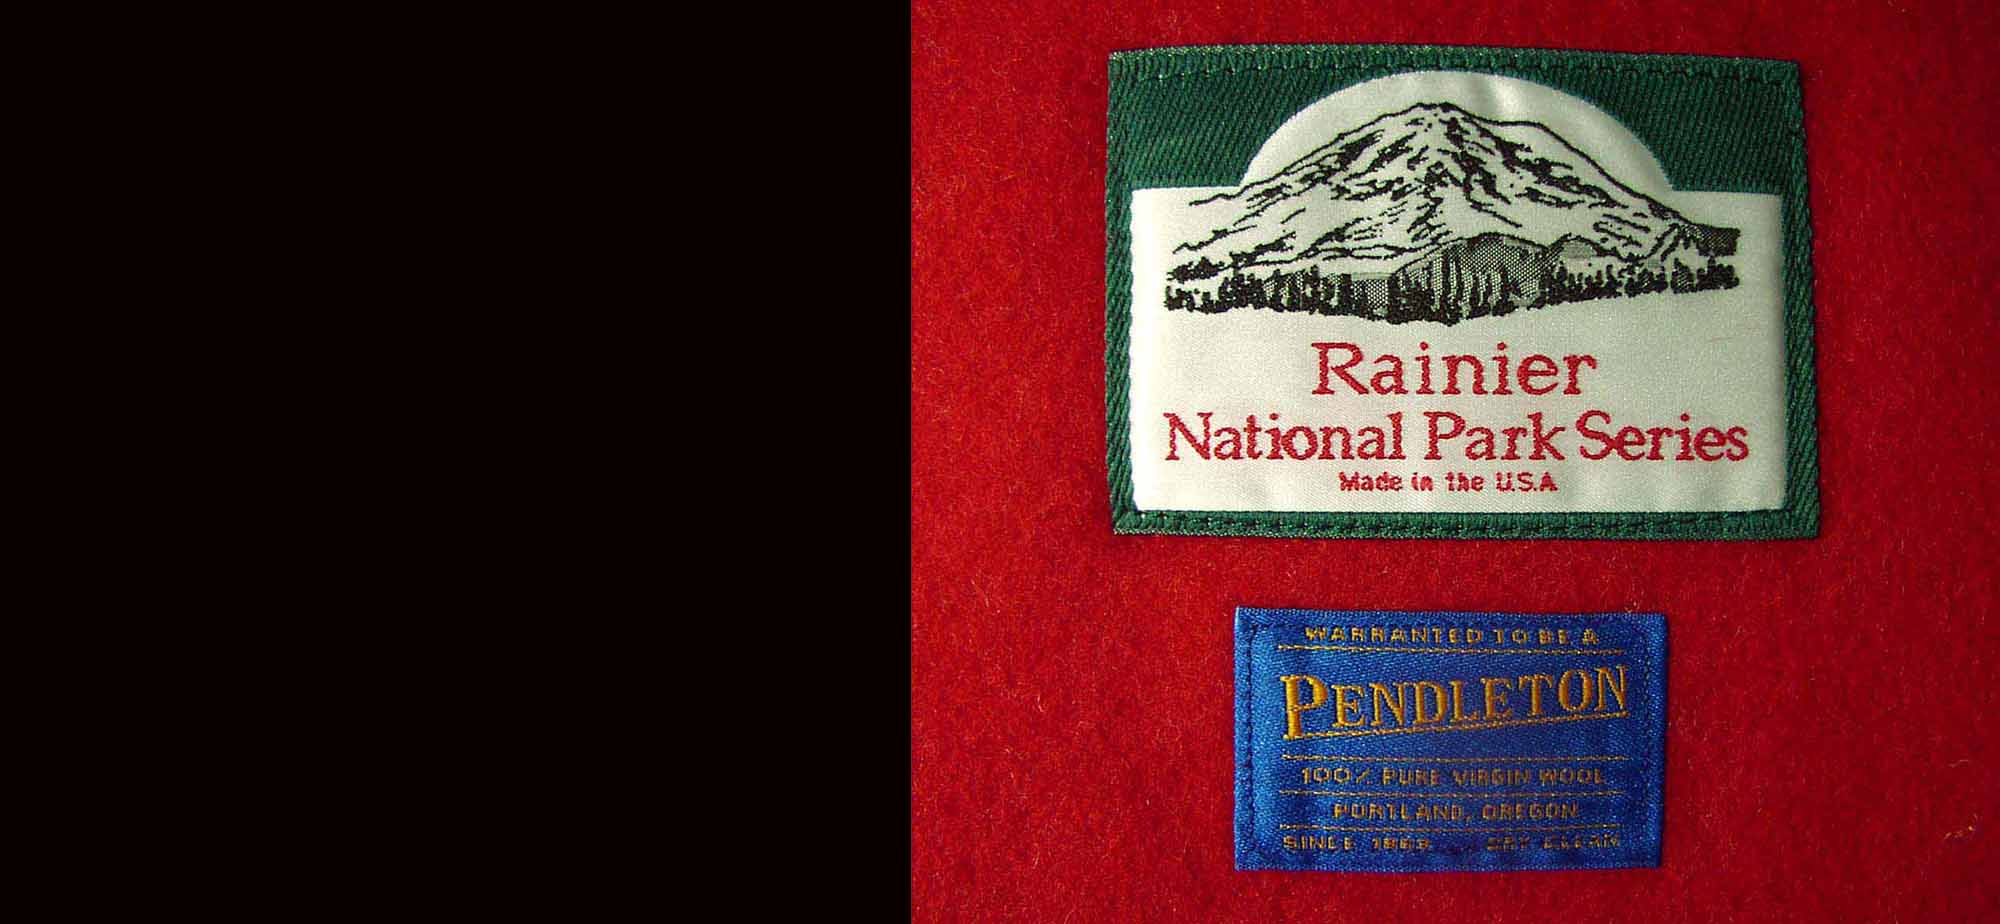 ペンドルトン ナショナルパーク ブランケット・レー二ア国立公園